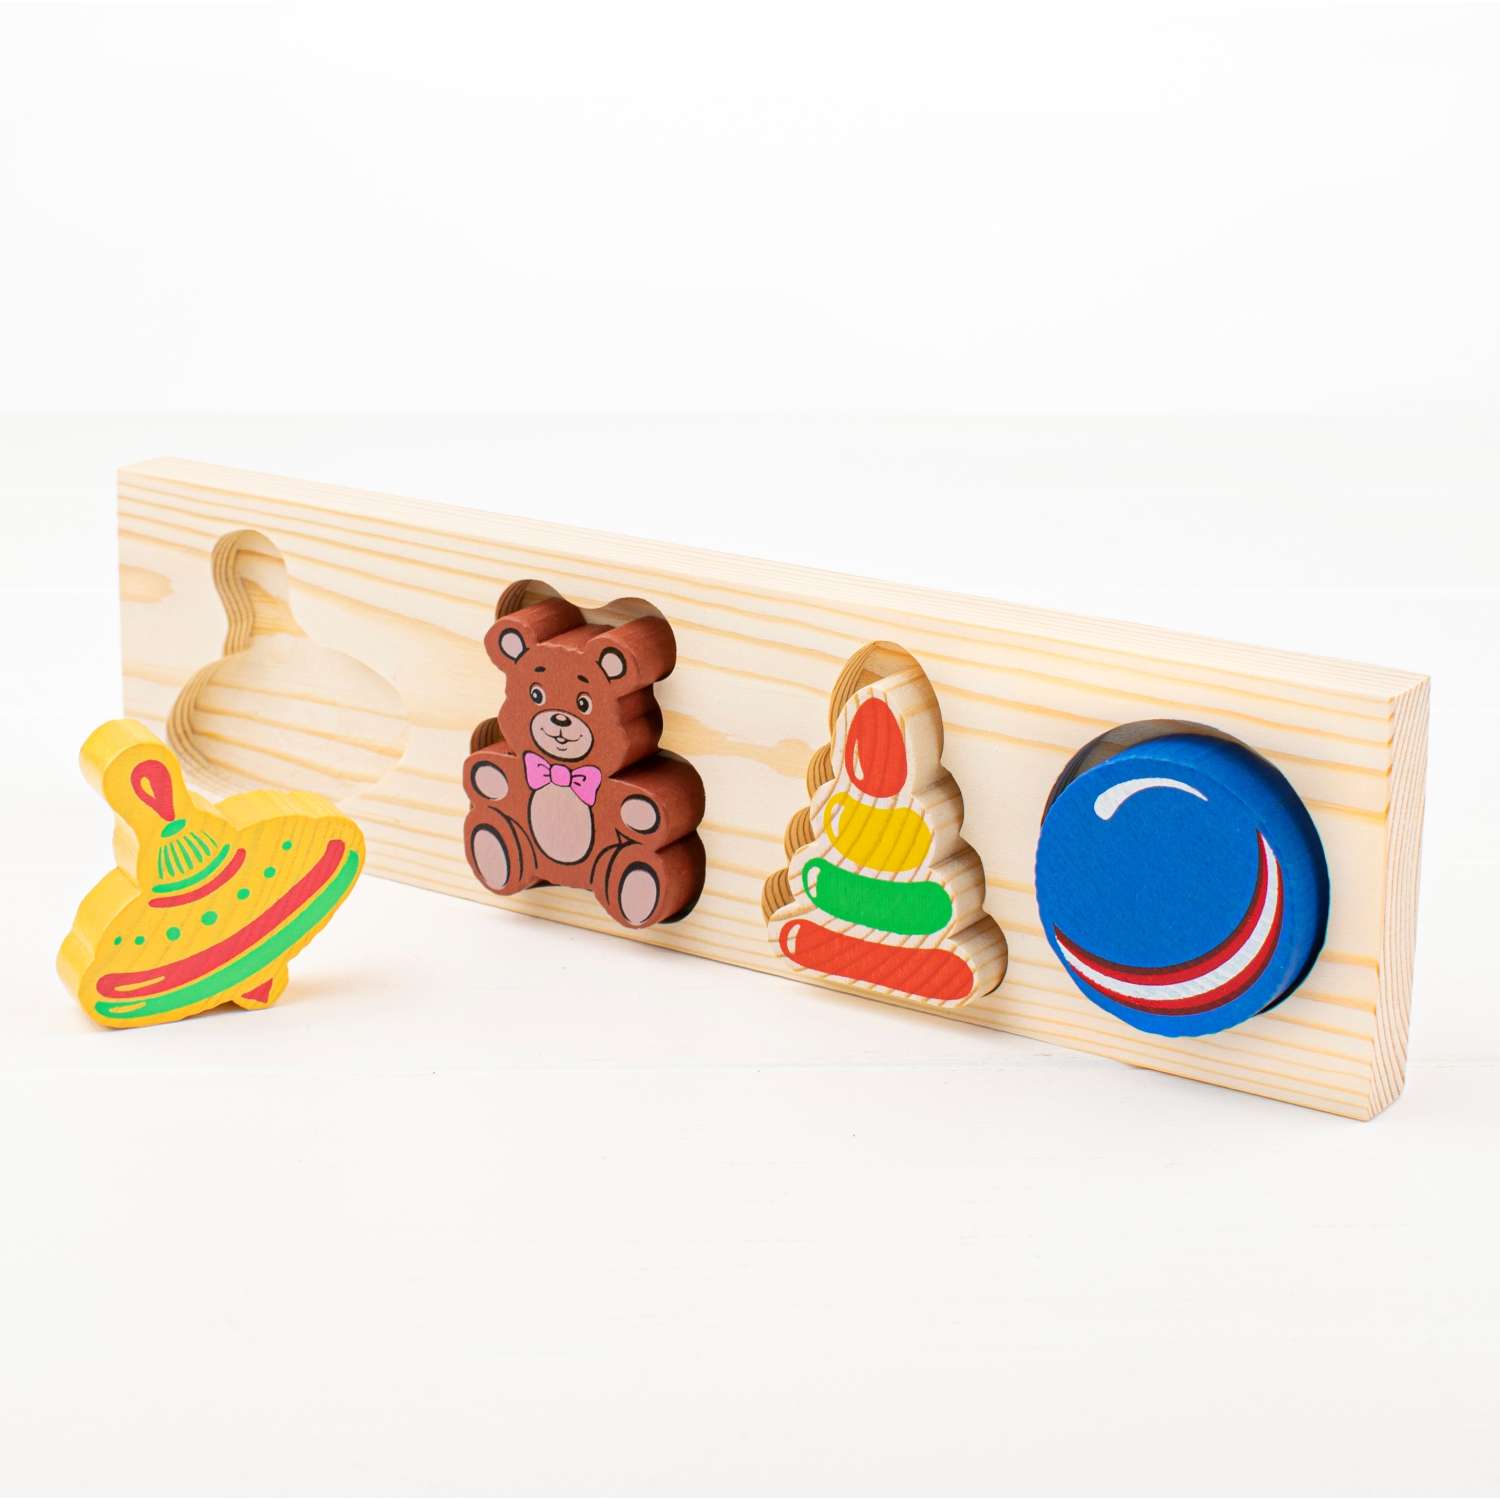 Рамка-Вкладыш Томик Игрушки 5 деталей 451 развивающая деревянная игрушка - фото 5